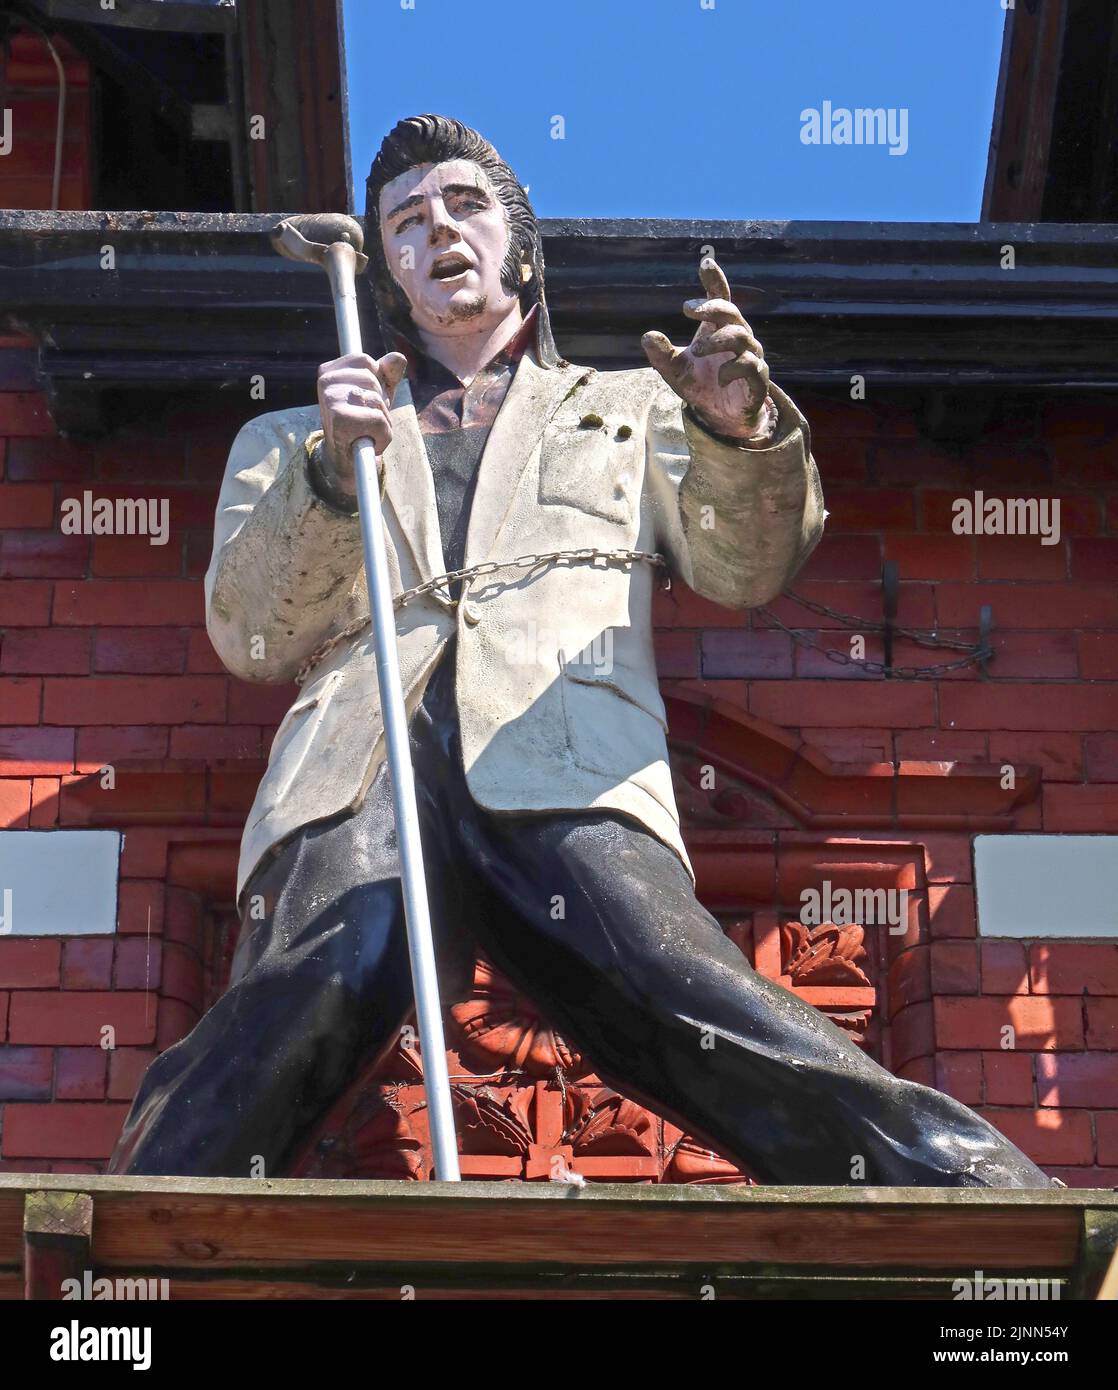 Statua di Elvis Presley, Hotel ferroviario, Pillory St, Nantwich, Cheshire, INGHILTERRA, REGNO UNITO, CW5 5SS Foto Stock